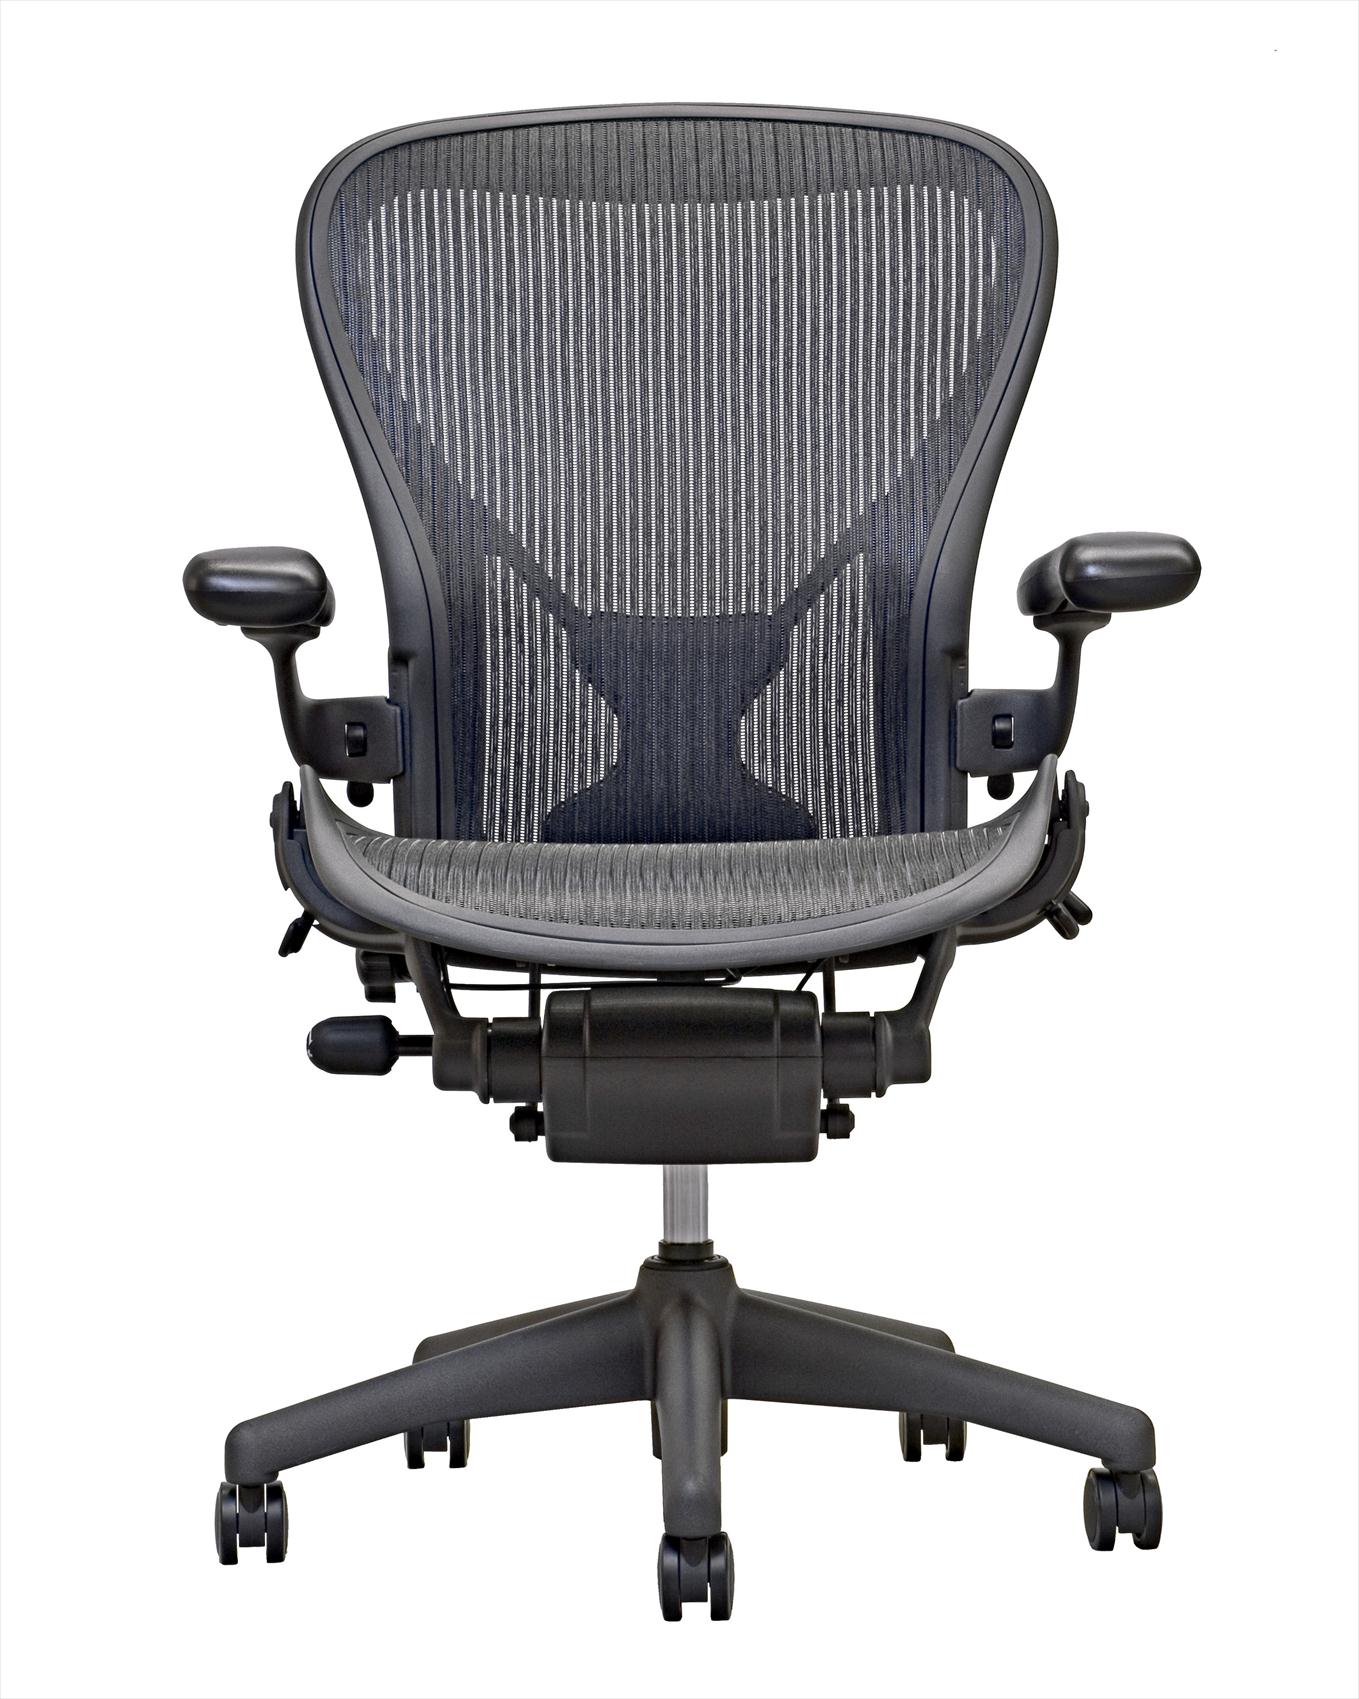 アーロンチェア ハーマンミラー社 オフィスチェアの頂点 オフィスチェア機能別比較 Chair Continental